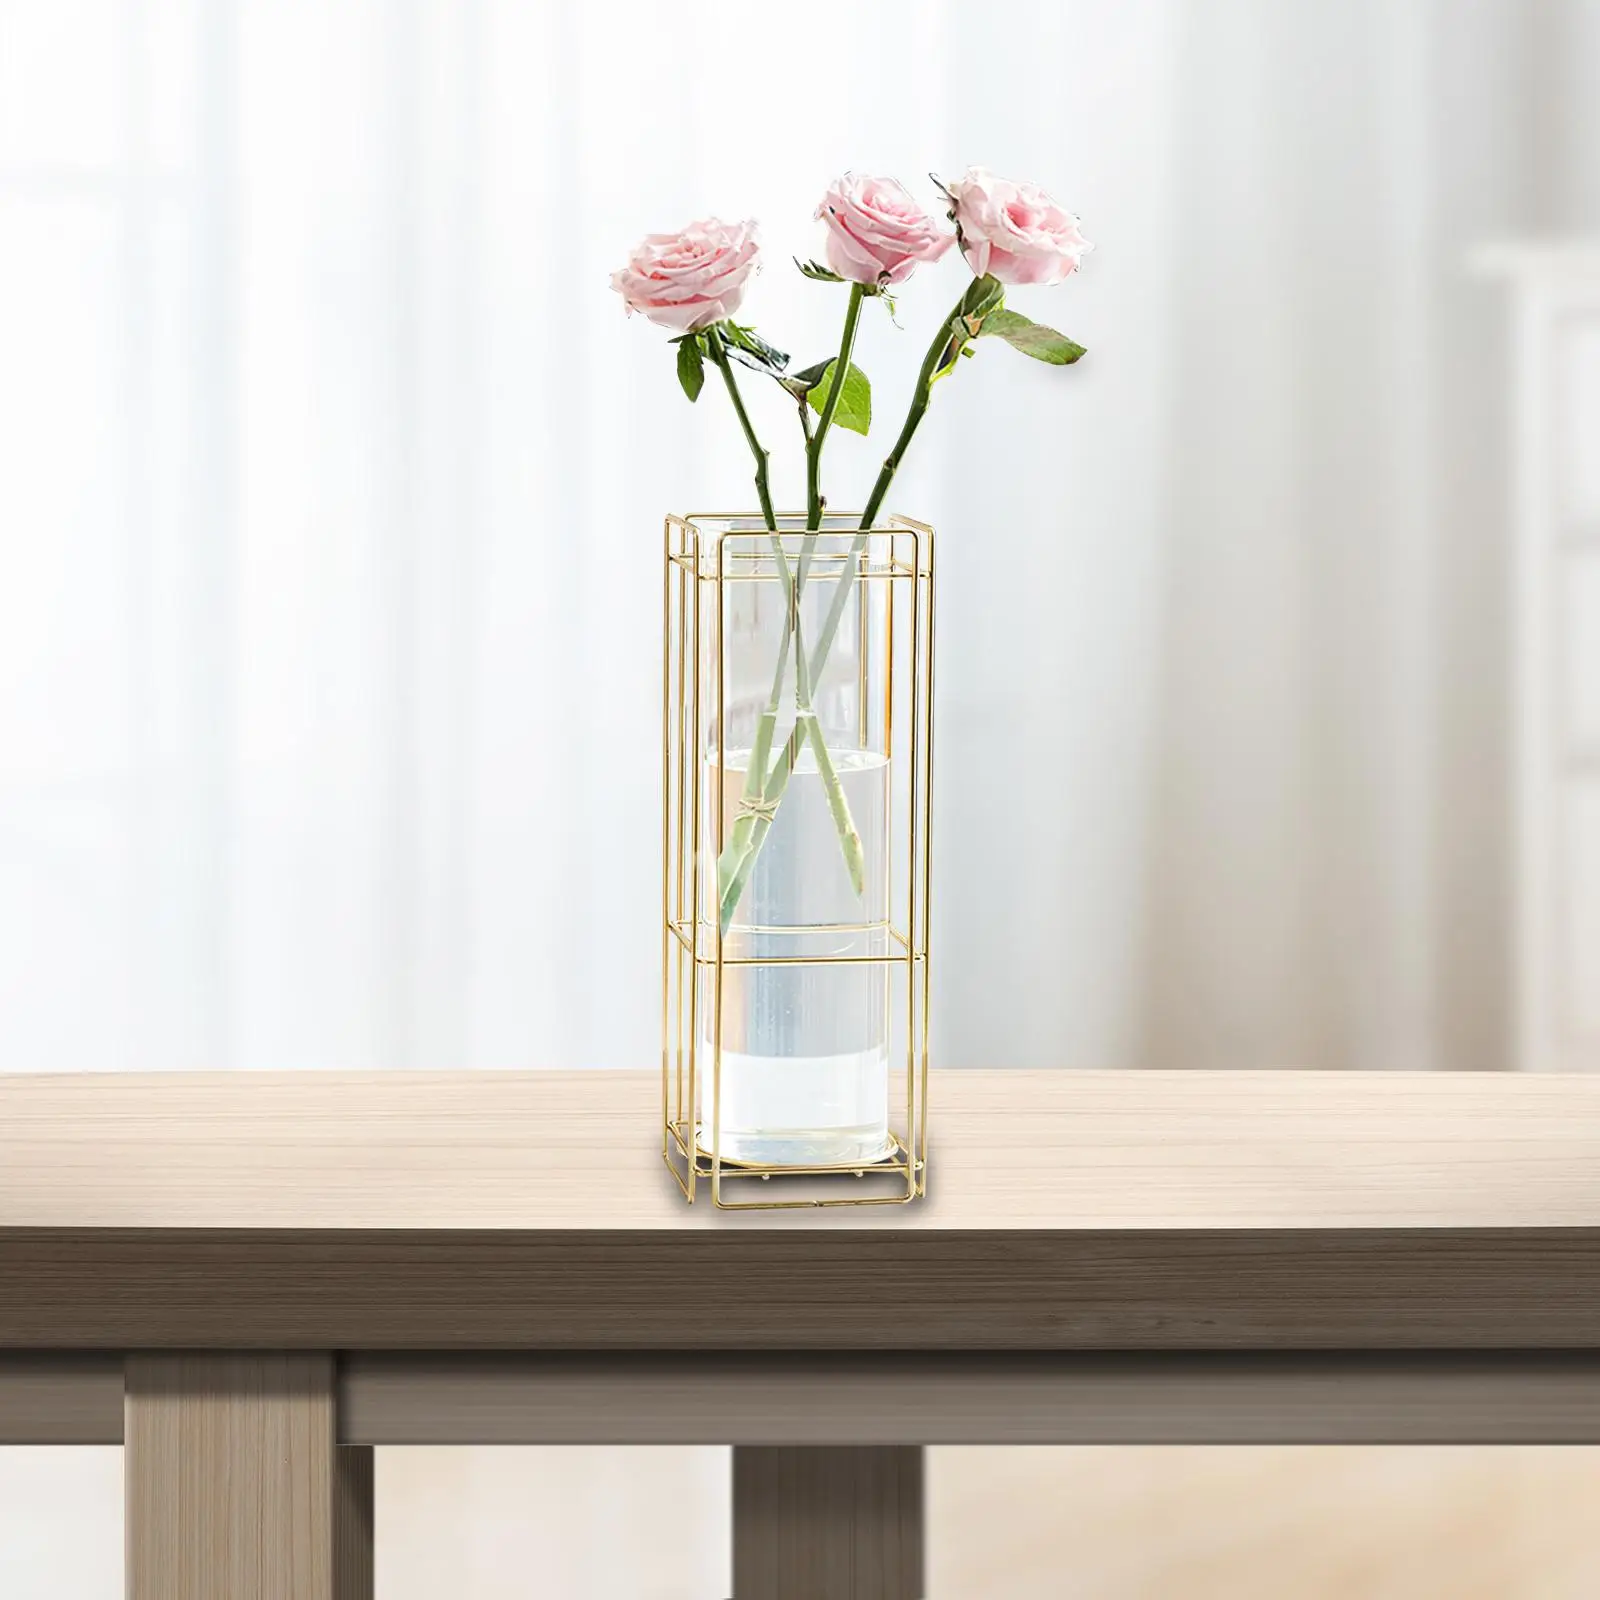 Flower Vase Glass Tube Vase with Metal Stand Rack Glass Vase Terrarium Plant Holder Flower Arrangement for Table Bedroom Desktop